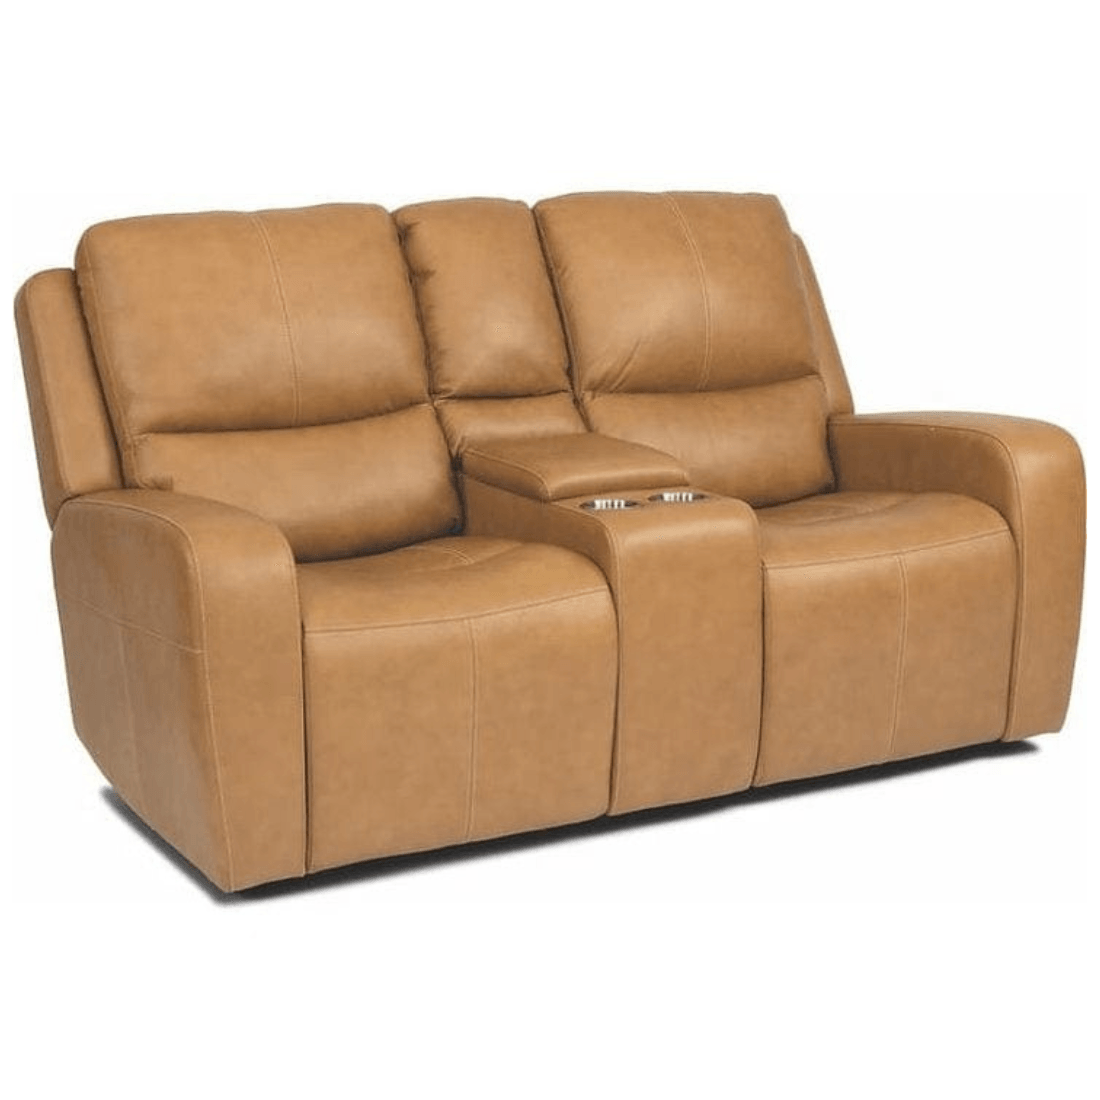 recliner chair, manual recliner, relax chair, relaxing chair, recliner, recliners, one seater recliner, buy recliner chair, sofa, couch sofa, buy sofa